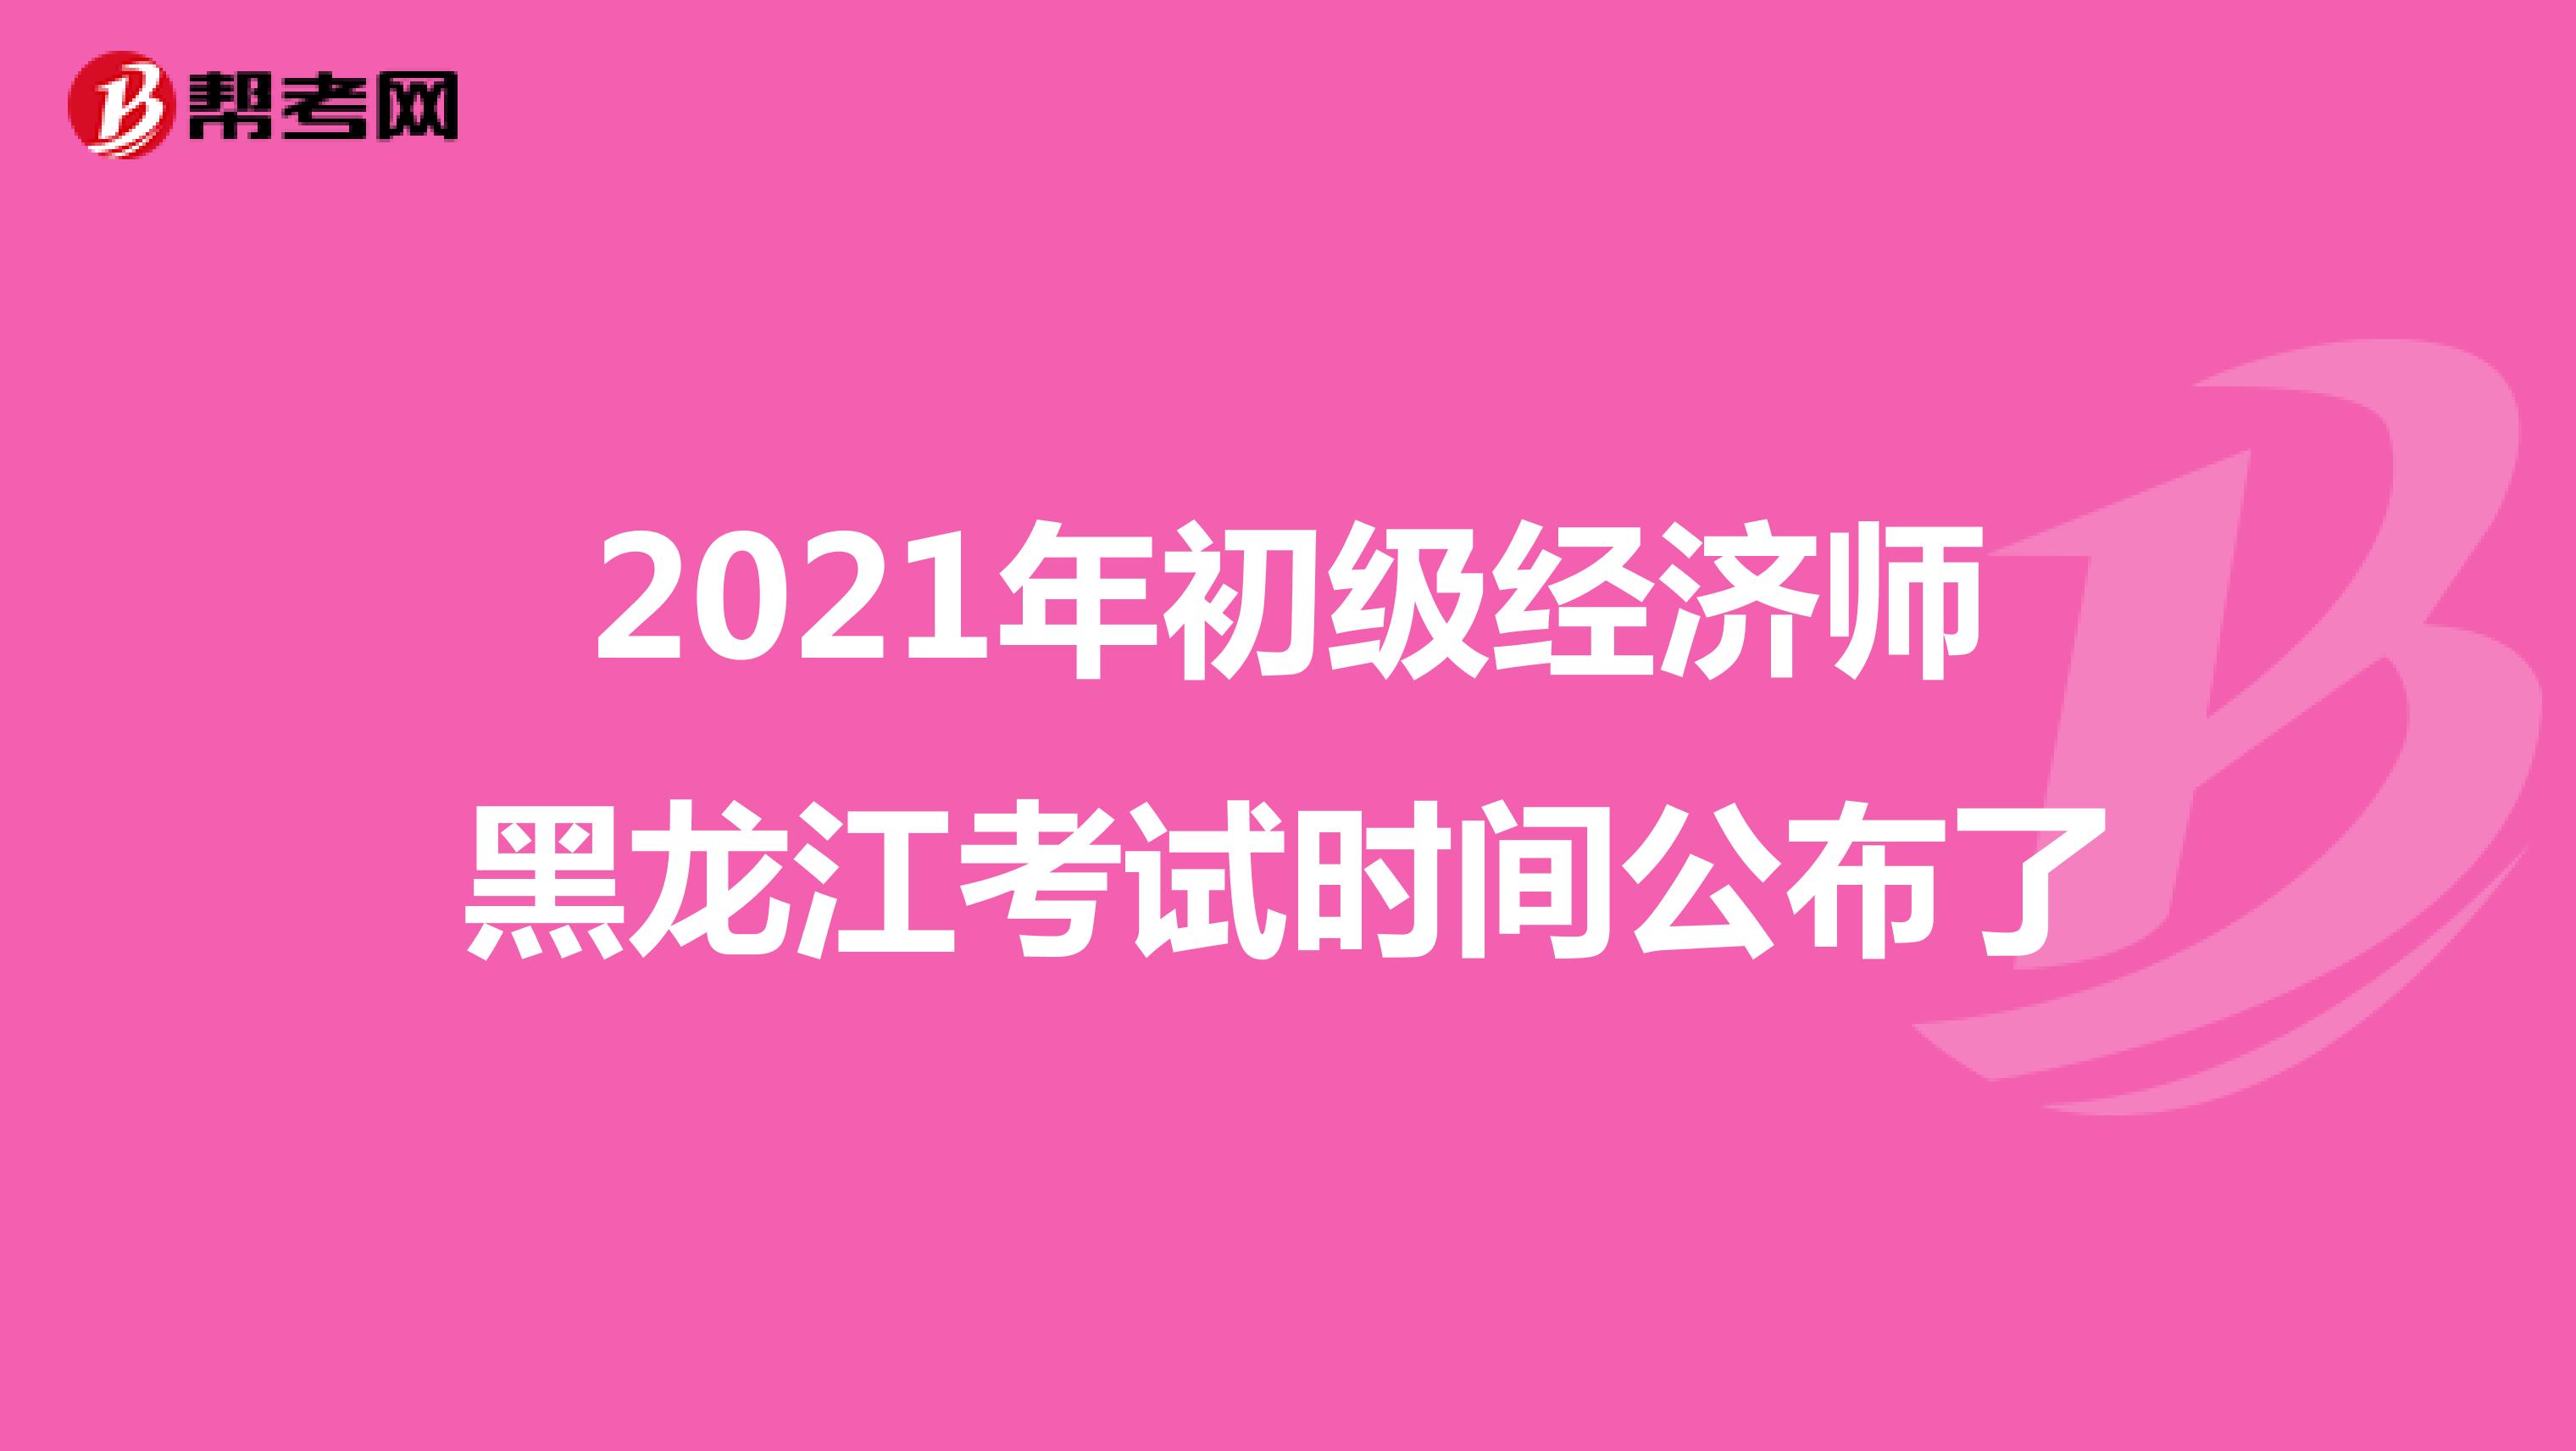 2021年初级经济师黑龙江考试时间公布了